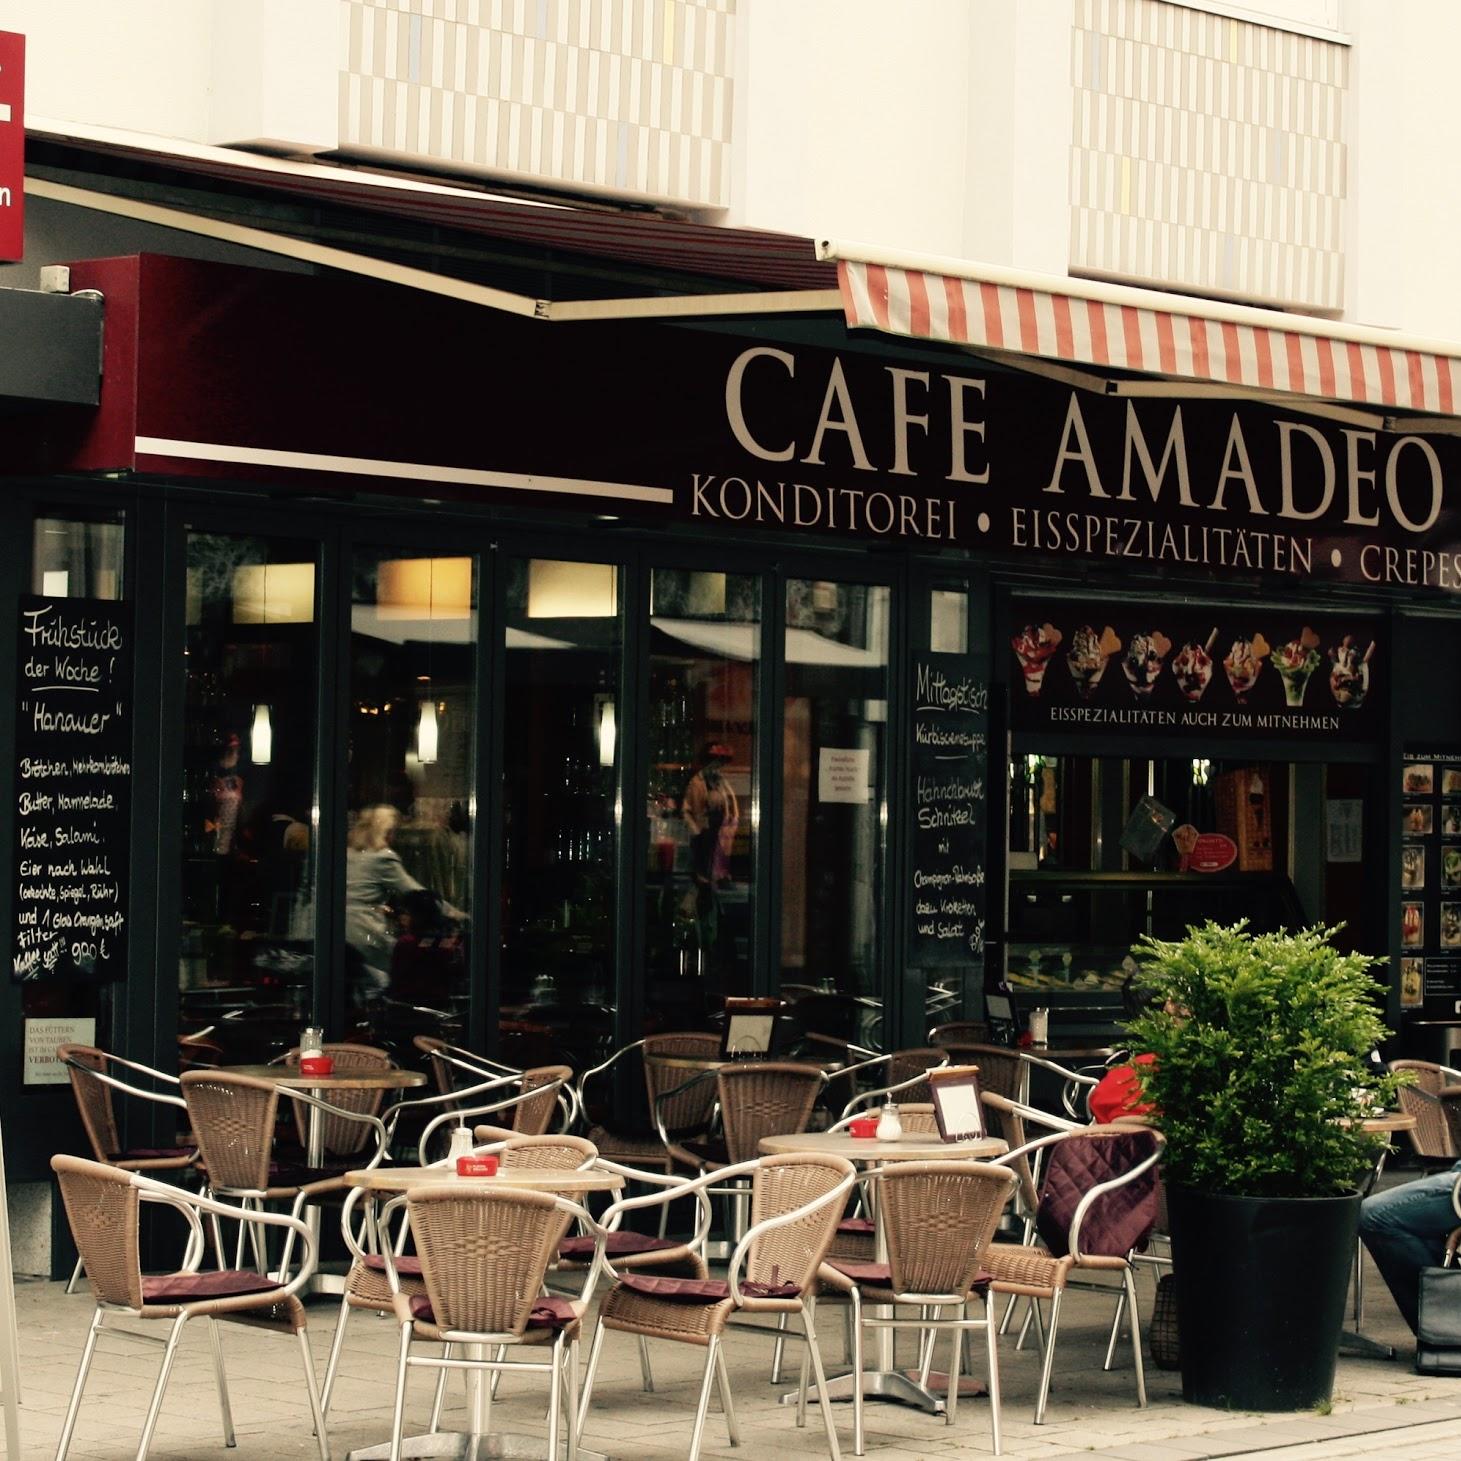 Restaurant "Cafe Amadeo" in Hanau